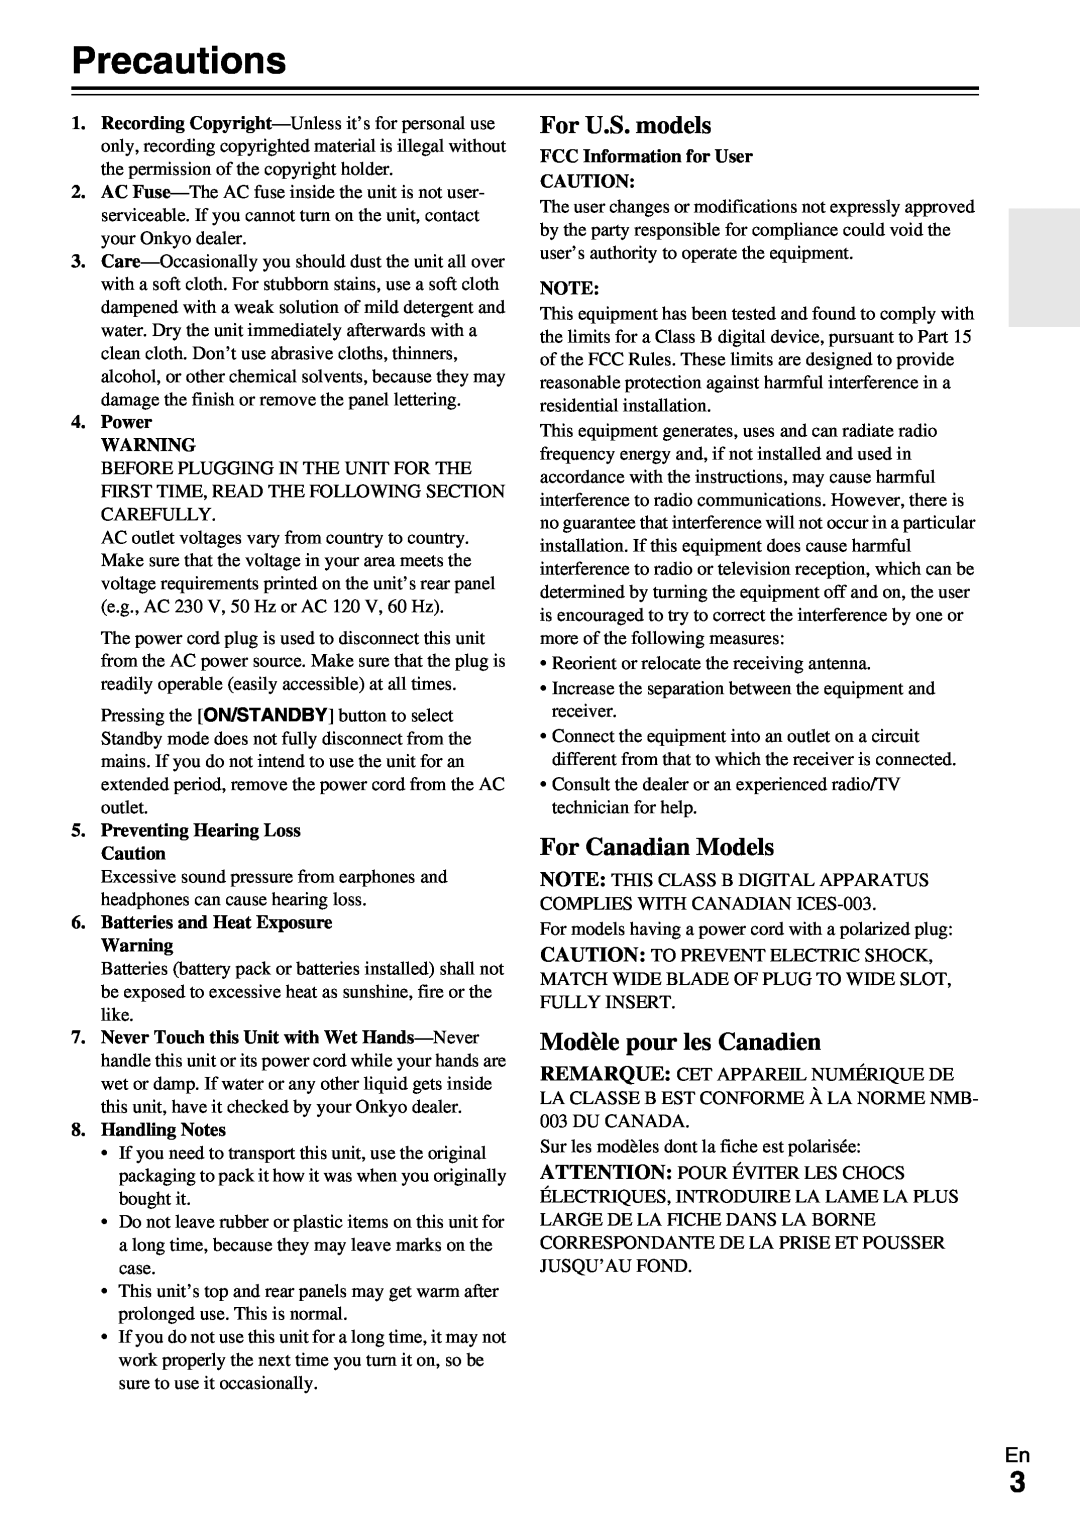 Onkyo HT-RC370 instruction manual Precautions, For U.S. models, For Canadian Models, Modèle pour les Canadien 